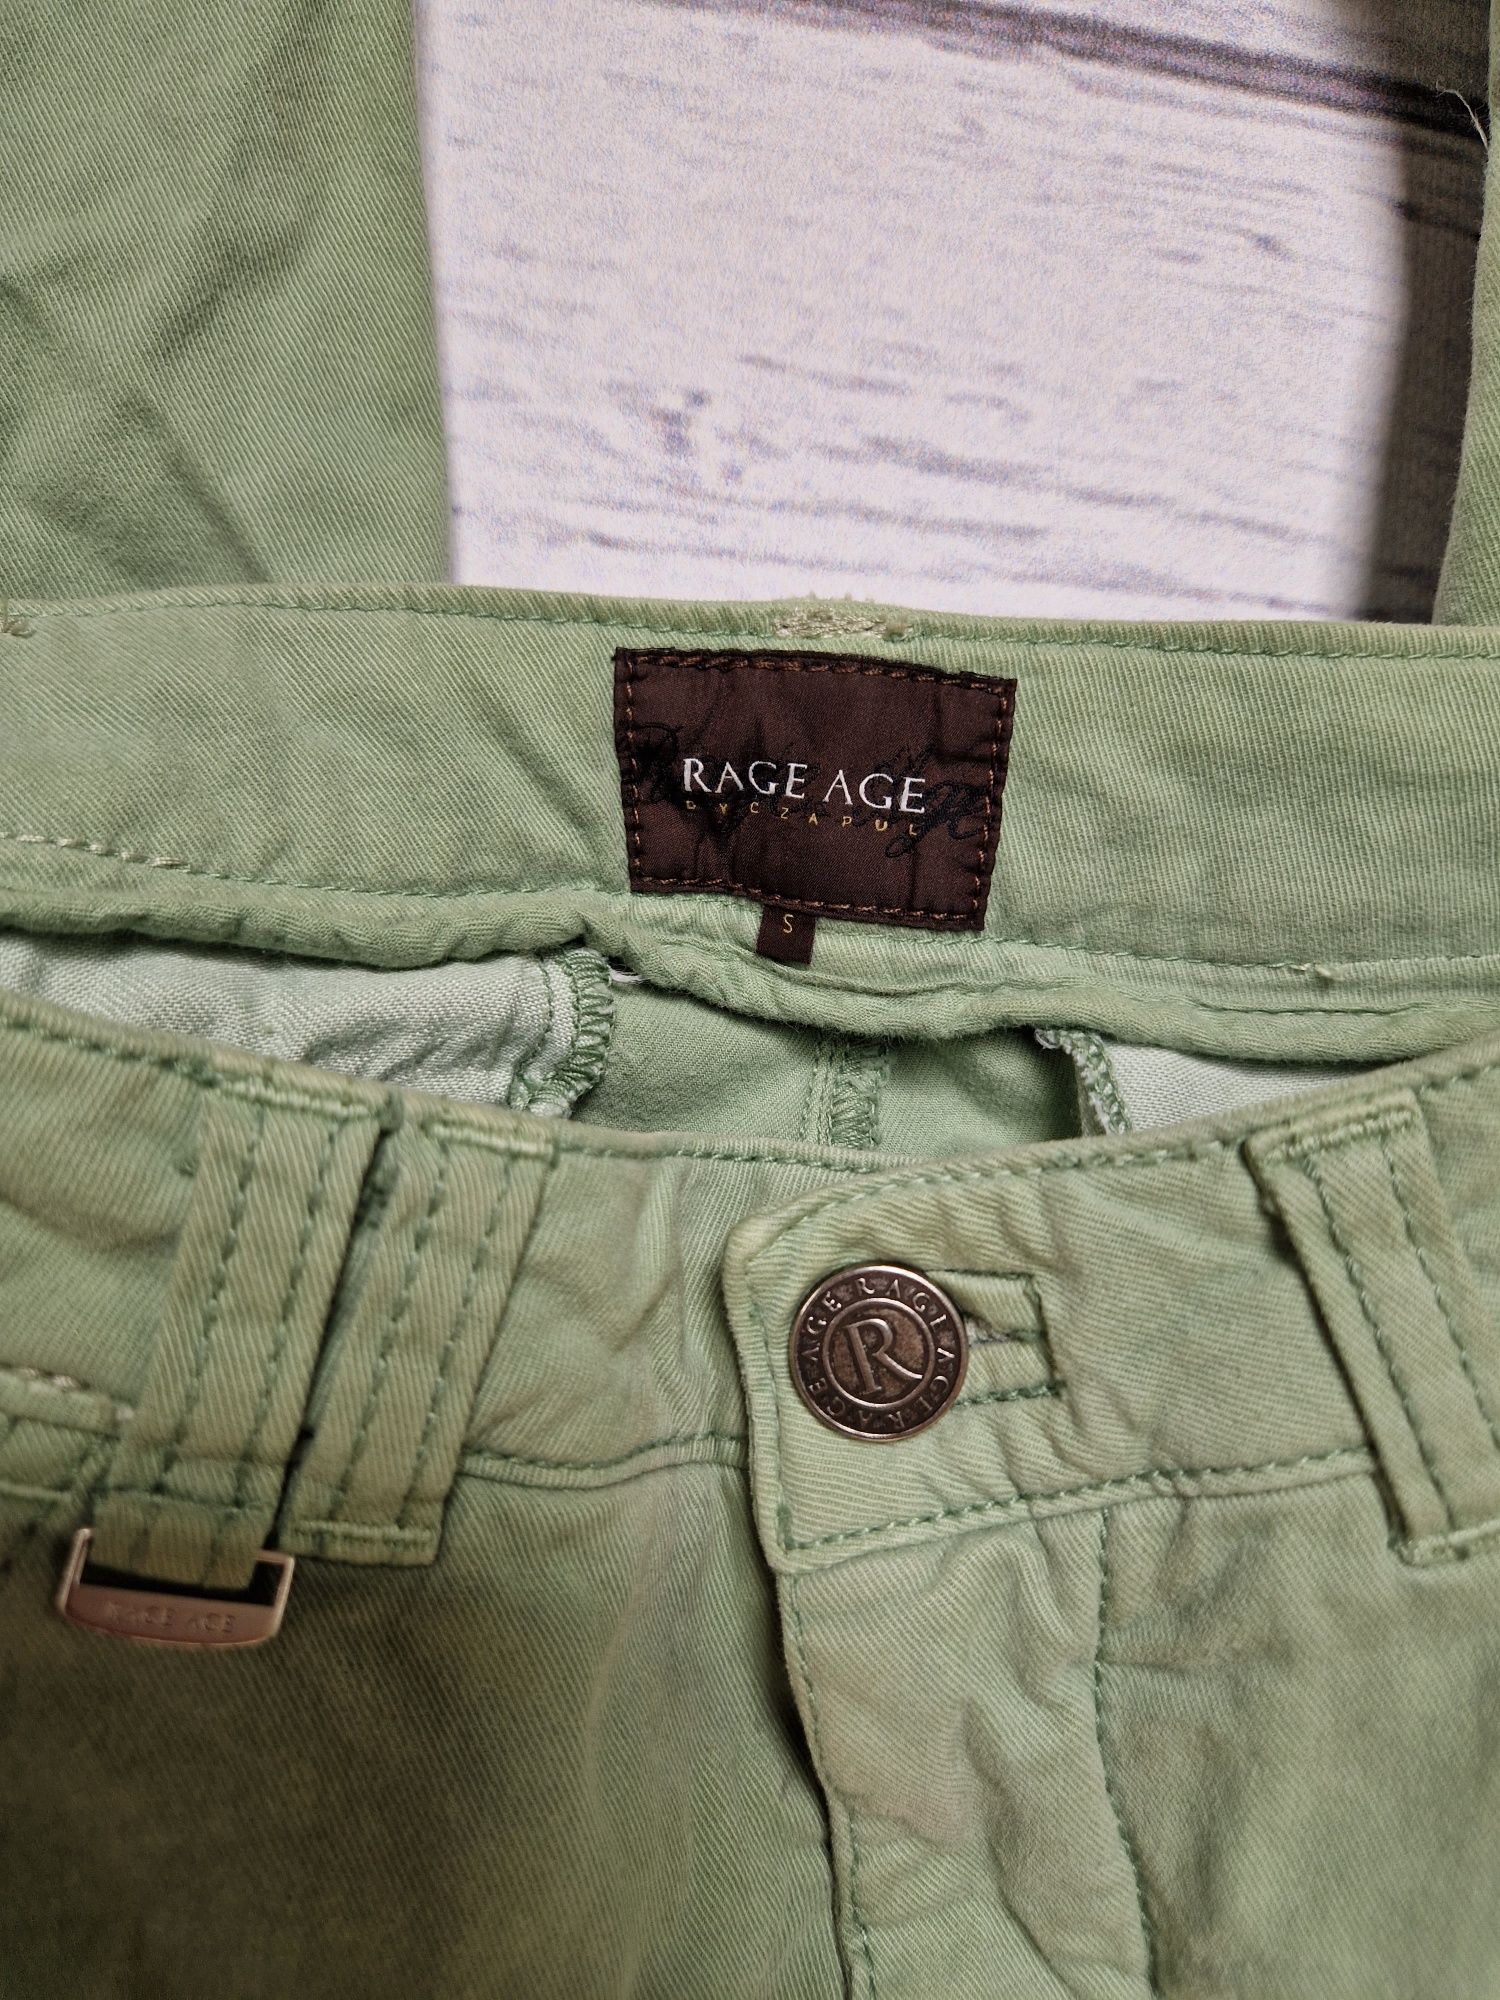 Rage age by czapul spodnie jeans bojówki joggery